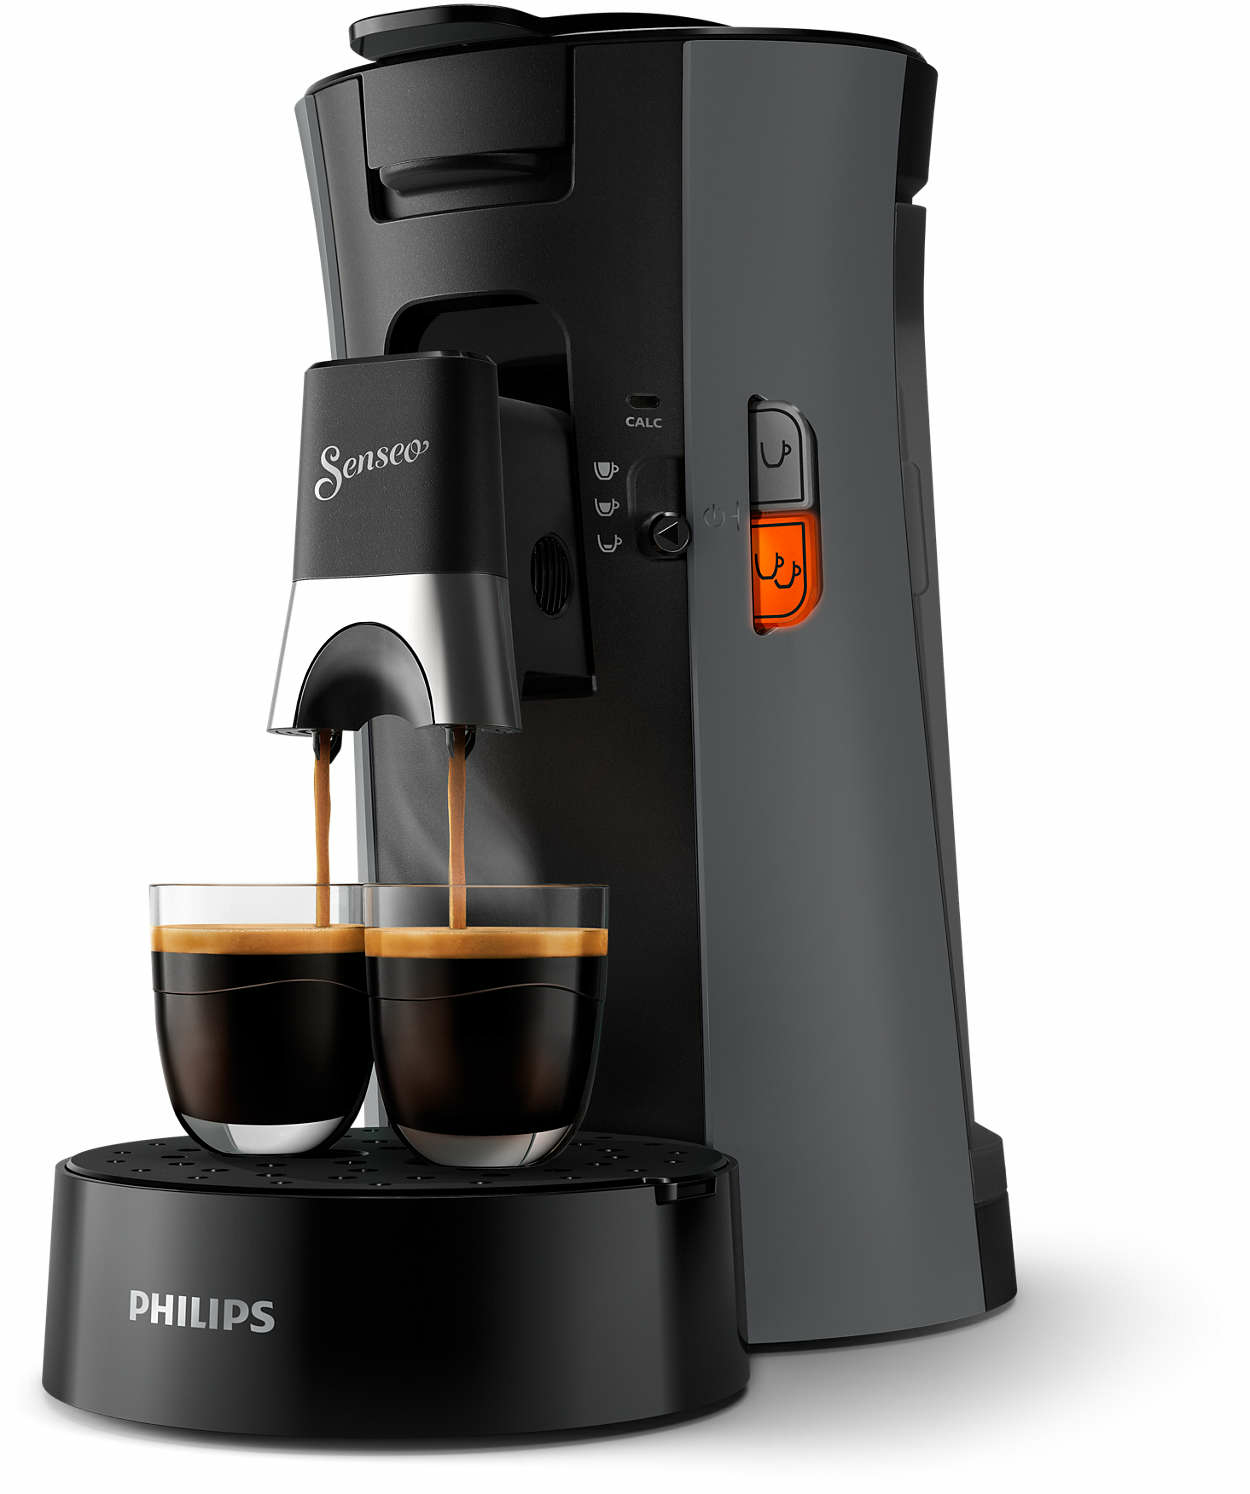 Philips by Versuni CSA230/51 coffee maker